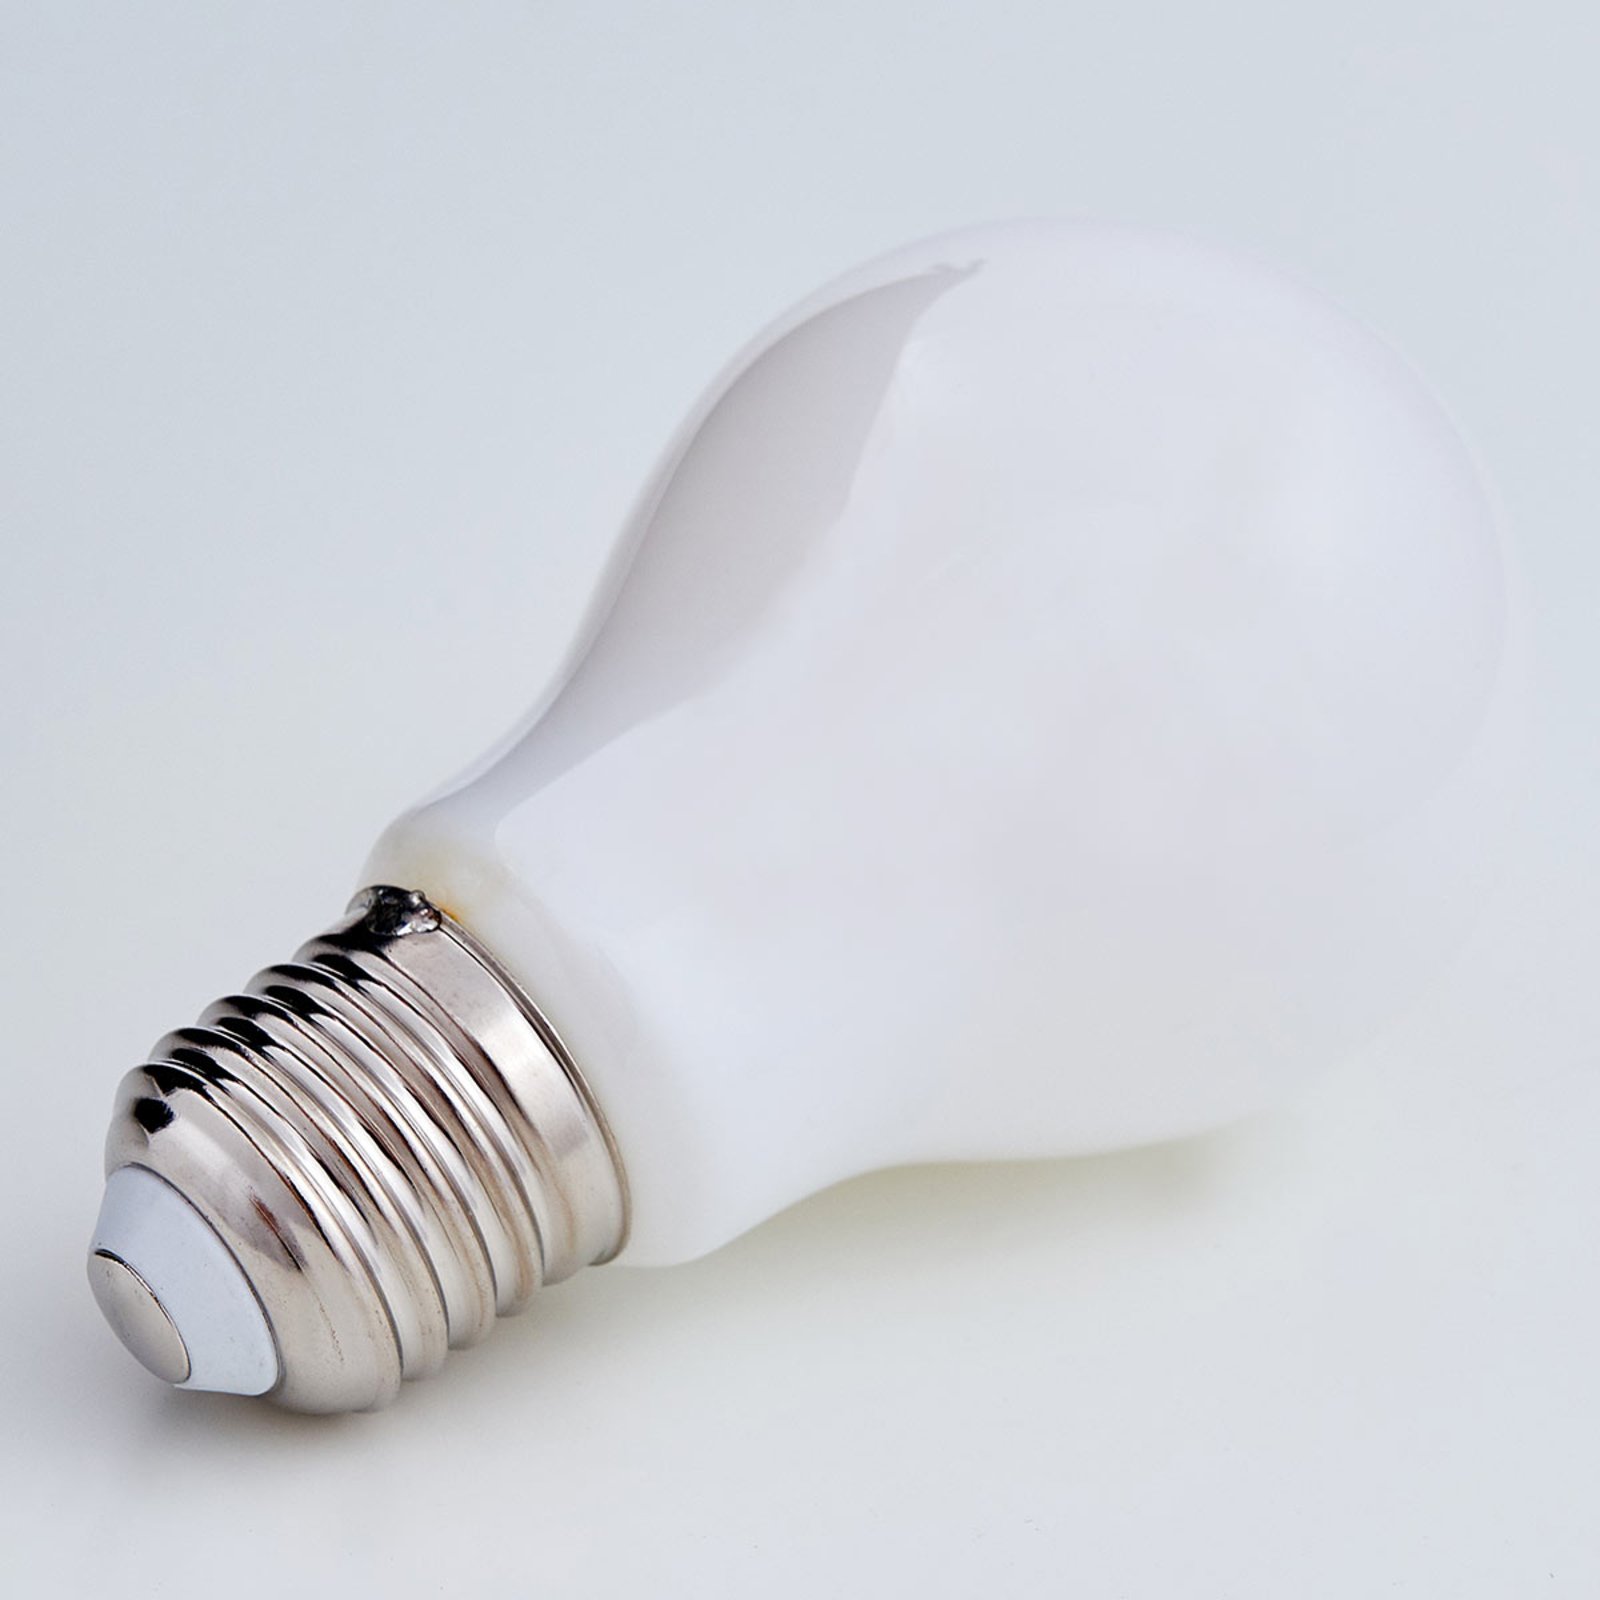 E27 LED-Lampe 4W, 470Lm, 2.700K, opal